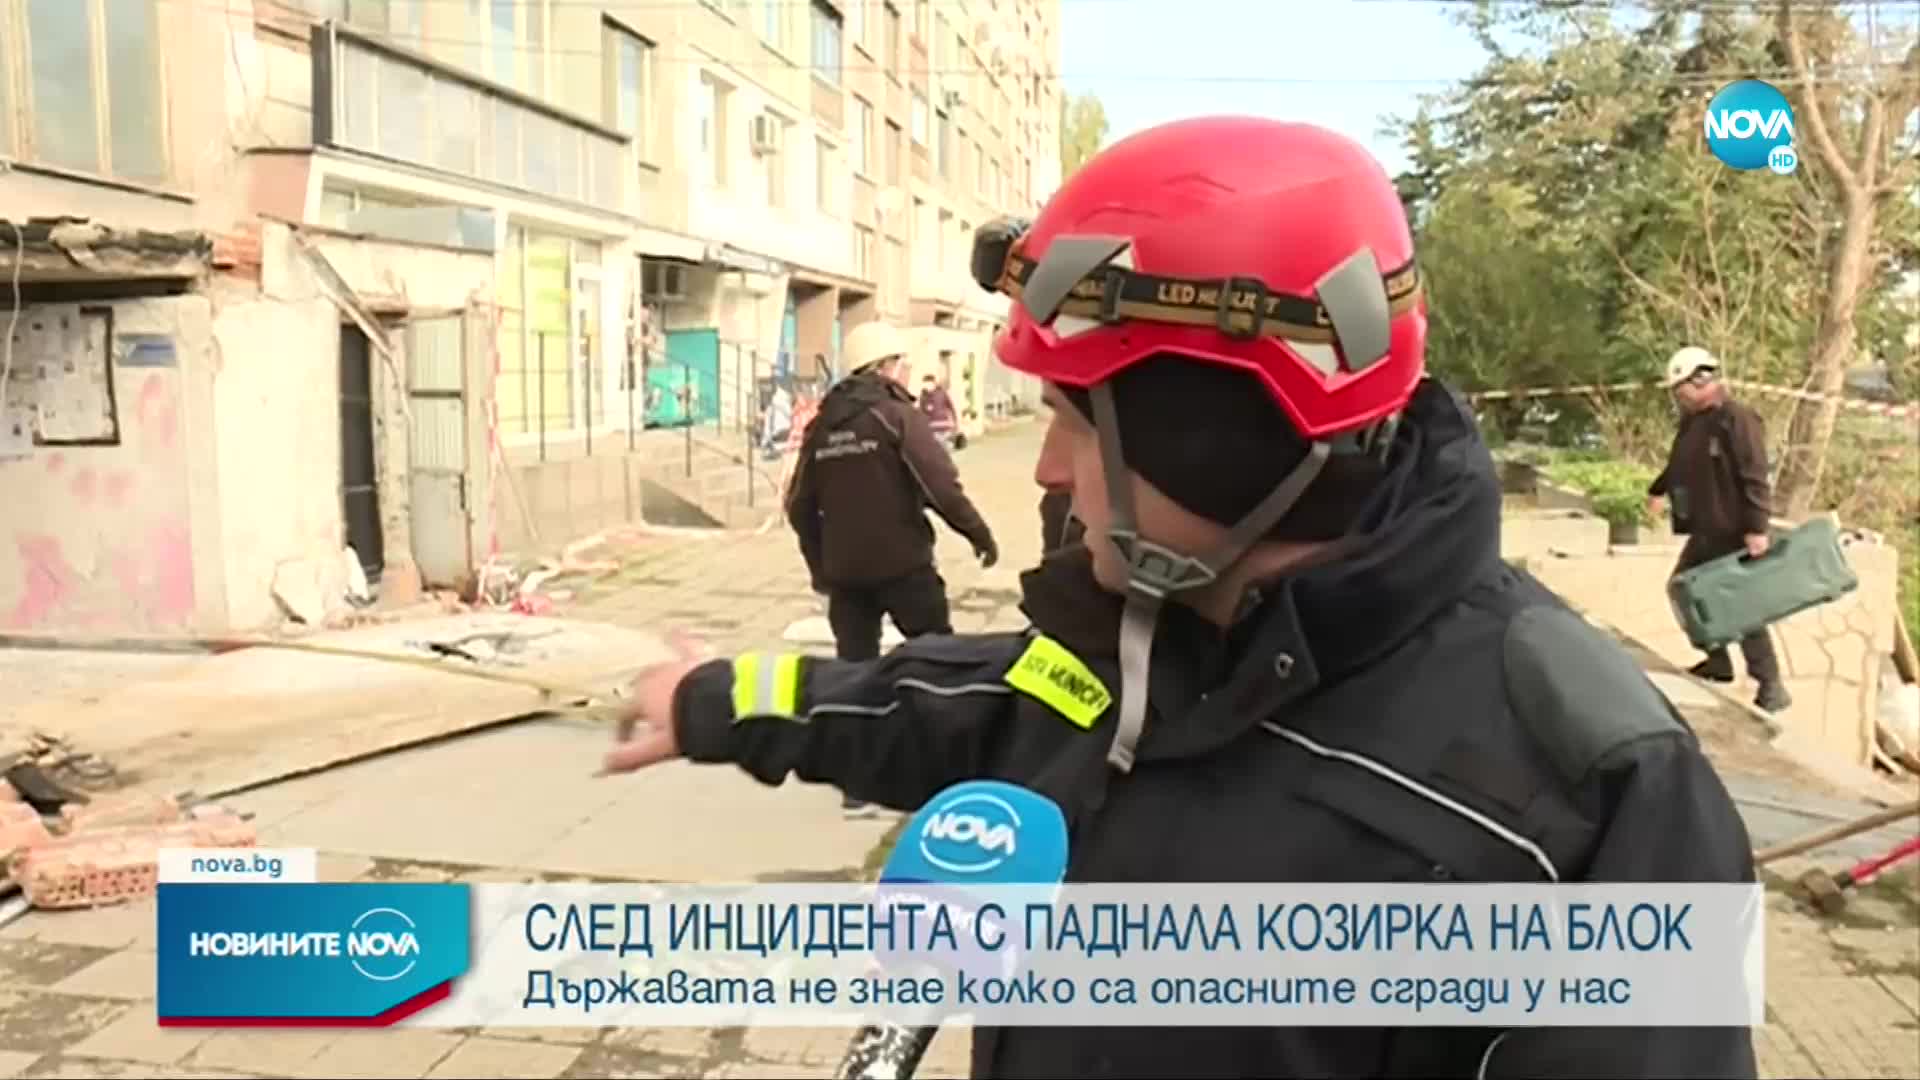 Глоба отнася раненият от падналата козирка на блок в София